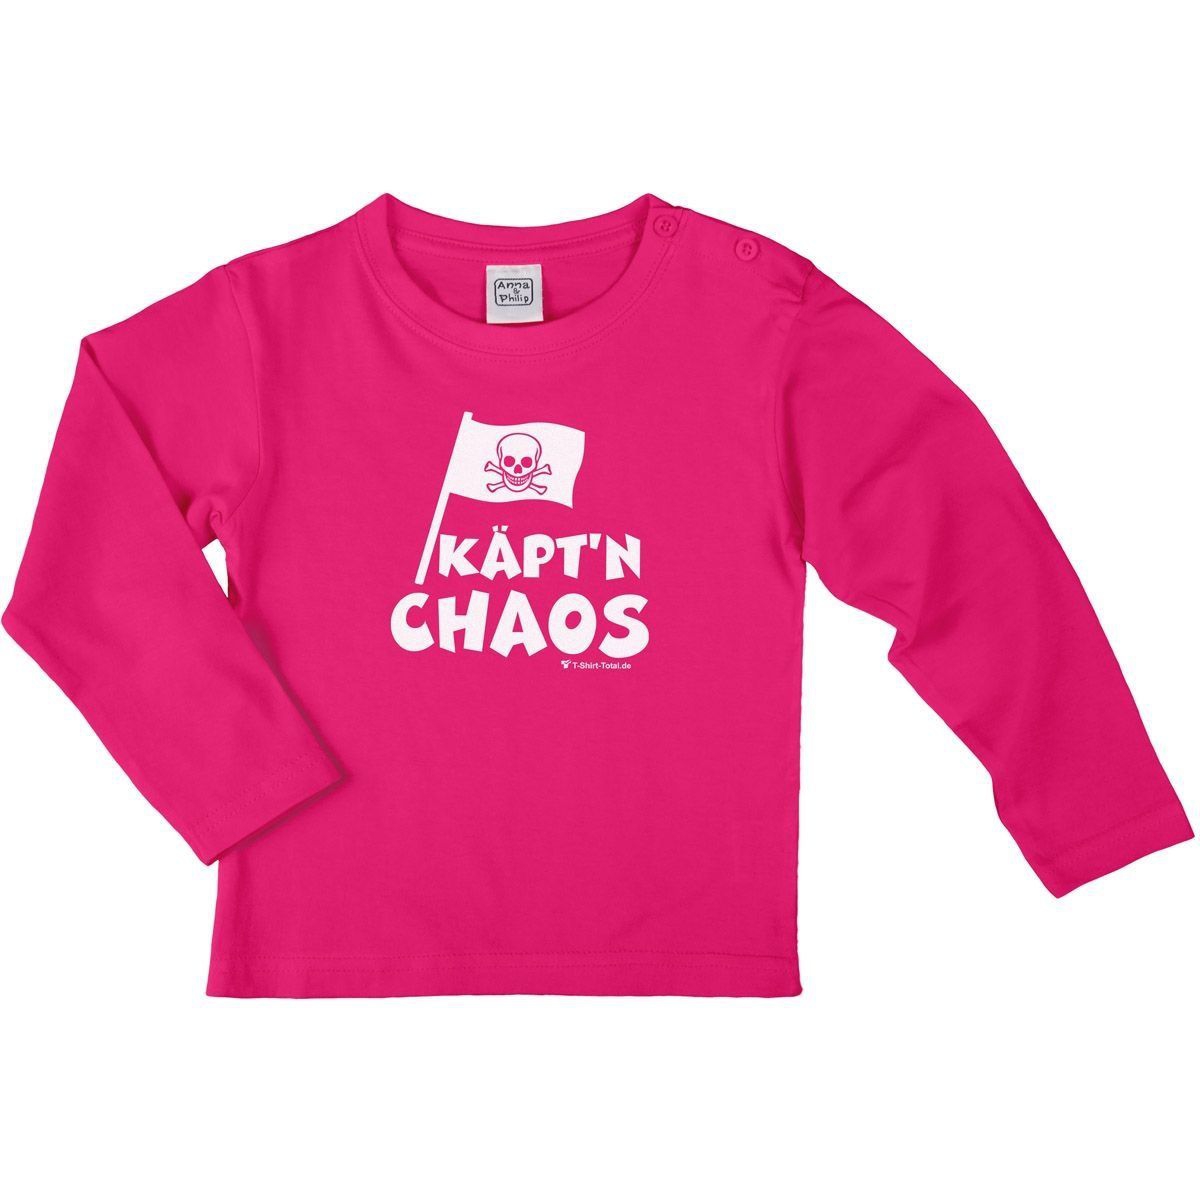 Käptn Chaos Kinder Langarm Shirt pink 134 / 140